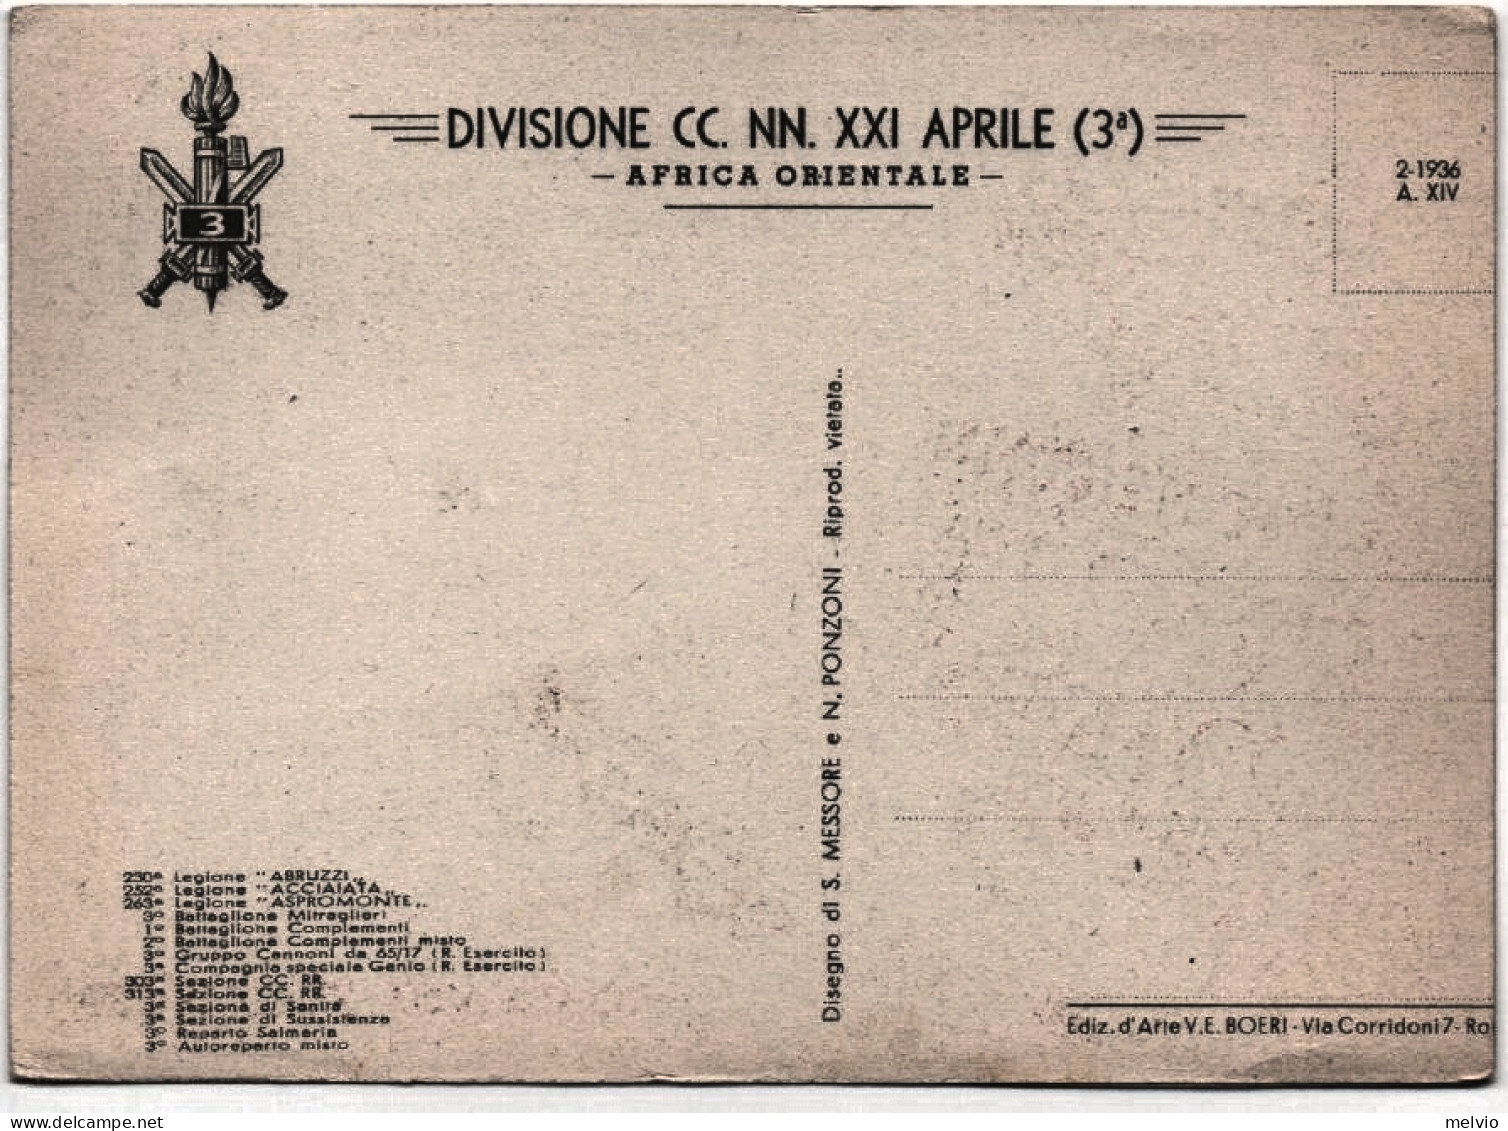 Divisione CC.NN. XXI Aprile (3^ ) Africa Orientale, "ROMA NOMEN ET OMEN", Illust - Italiaans Oost-Afrika